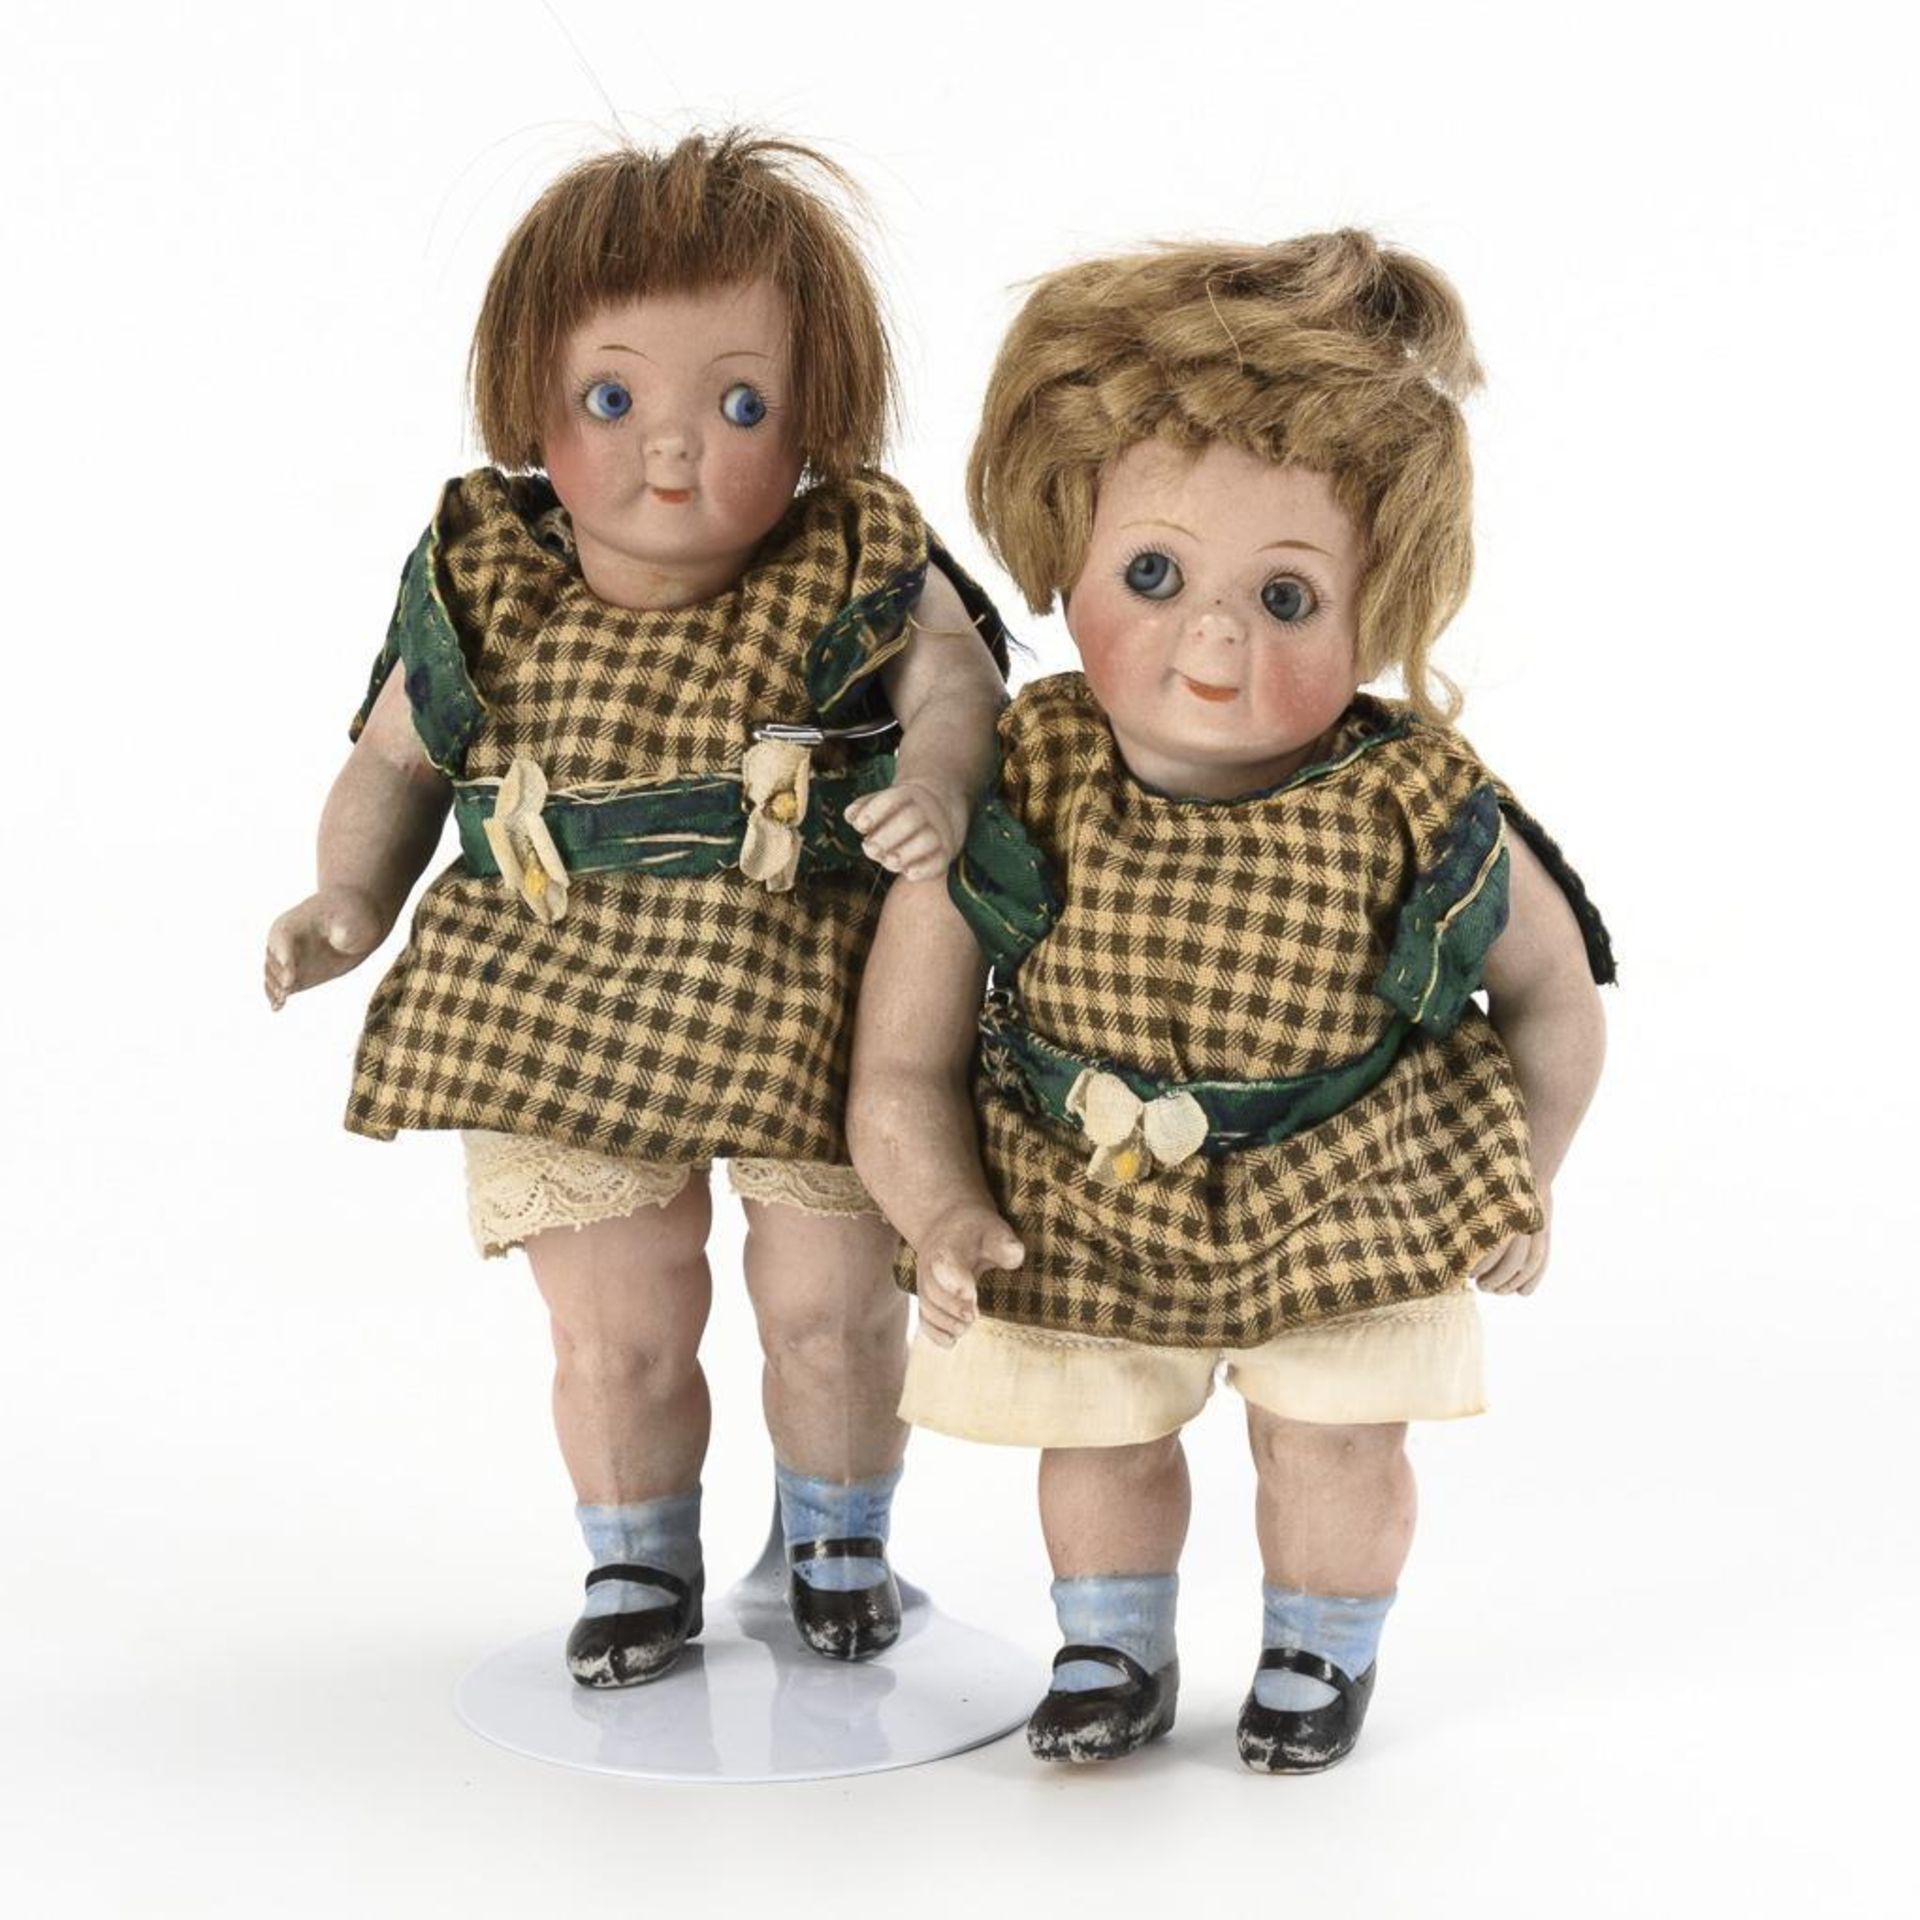 Googly-Zwillingspaar mit karierten Kleidchen.